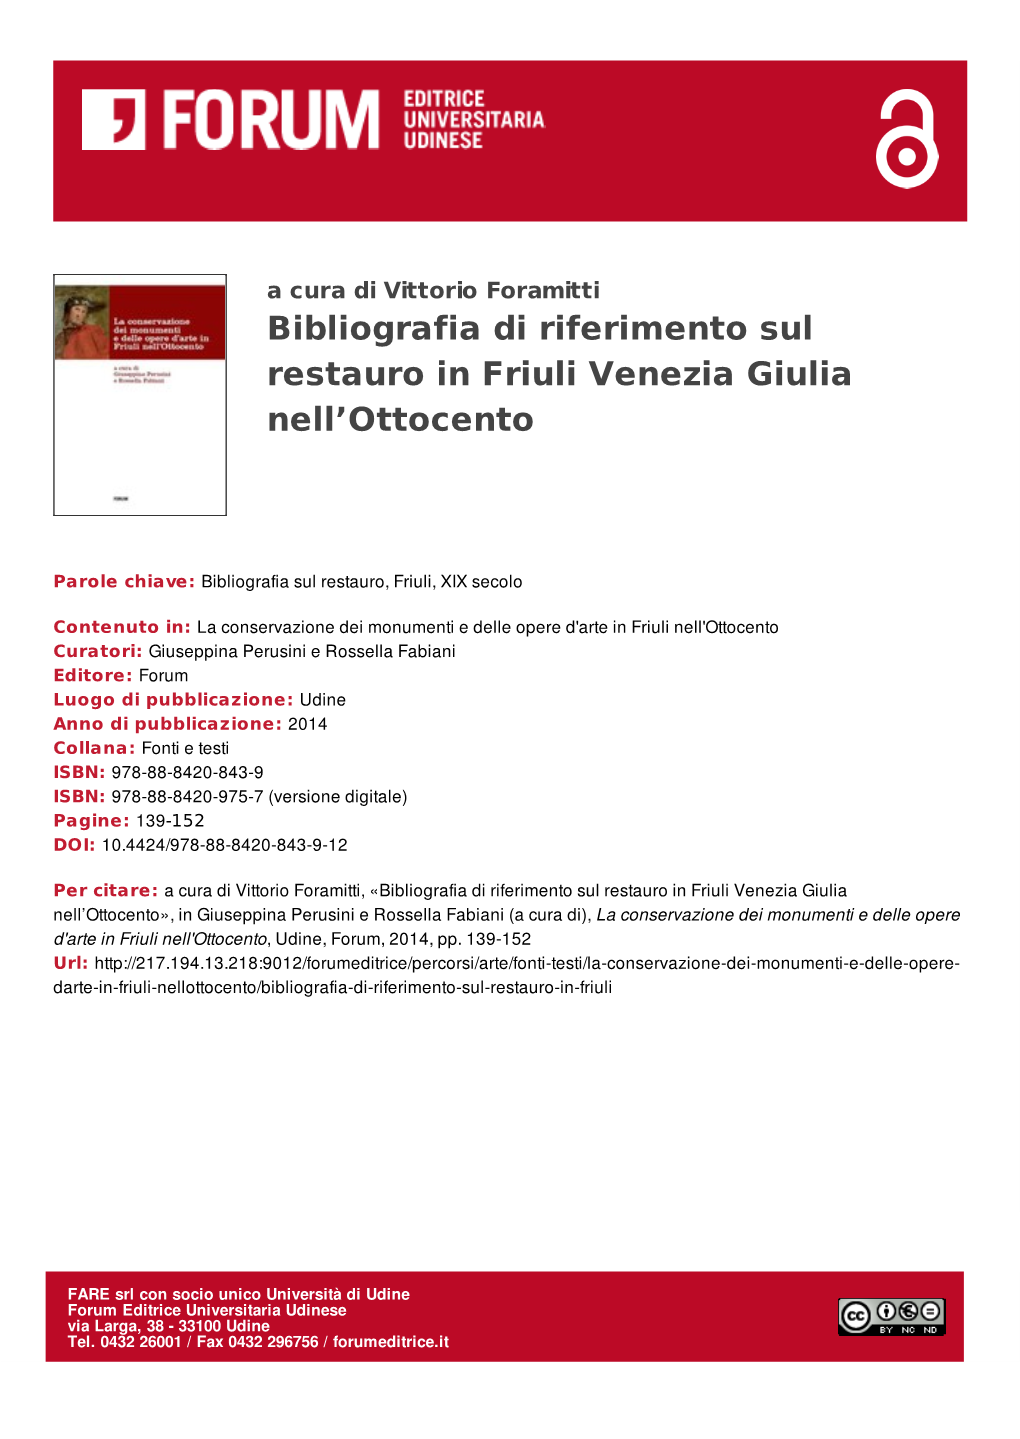 Bibliografia Di Riferimento Sul Restauro in Friuli Venezia Giulia Nell'ottocento